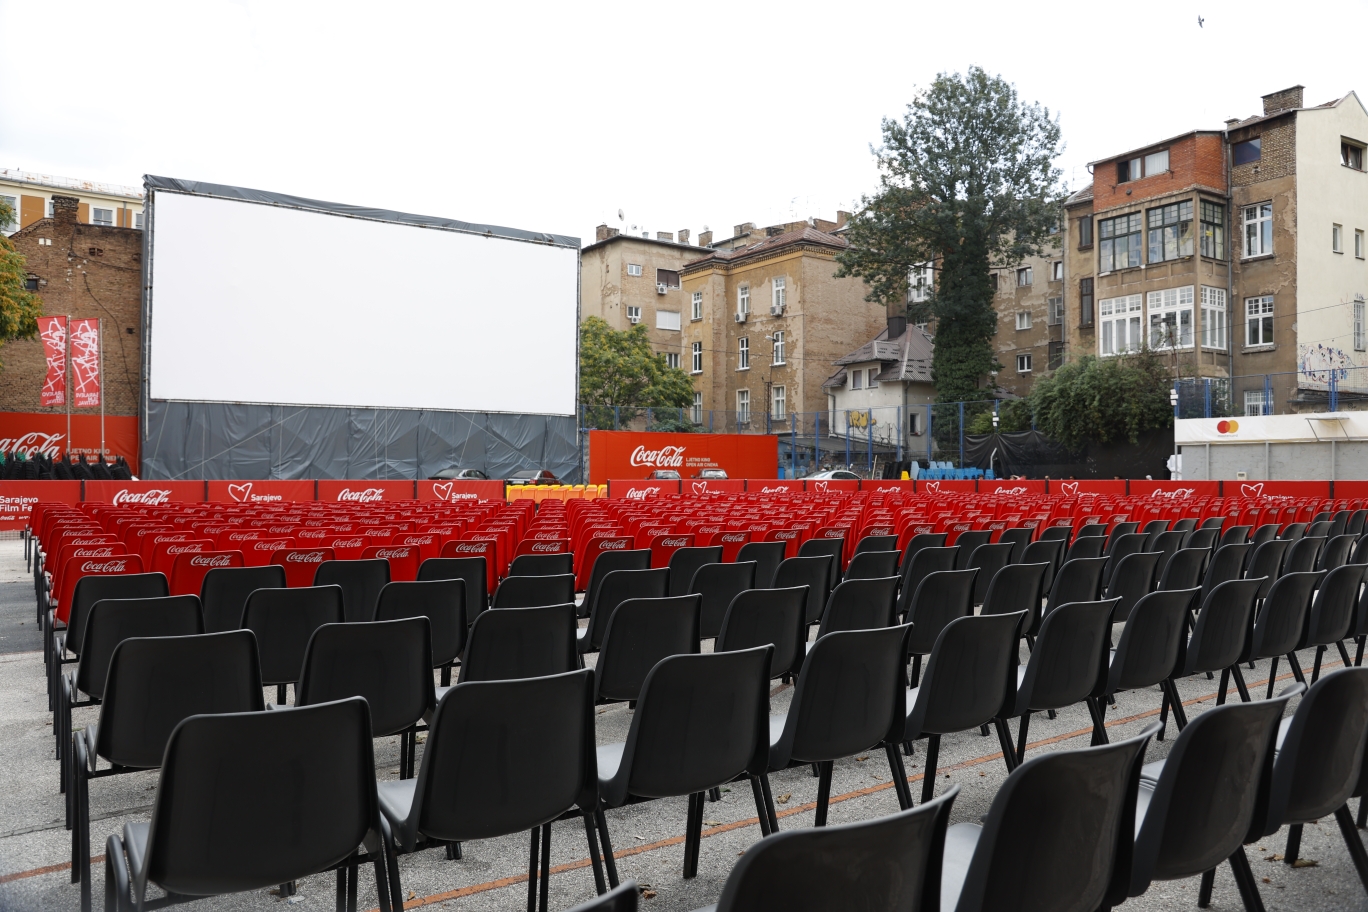 Ljetno kino "Metalac" spremno za projekcije: Podignuto najveće filmsko  platno u regiji - BosnaInfo